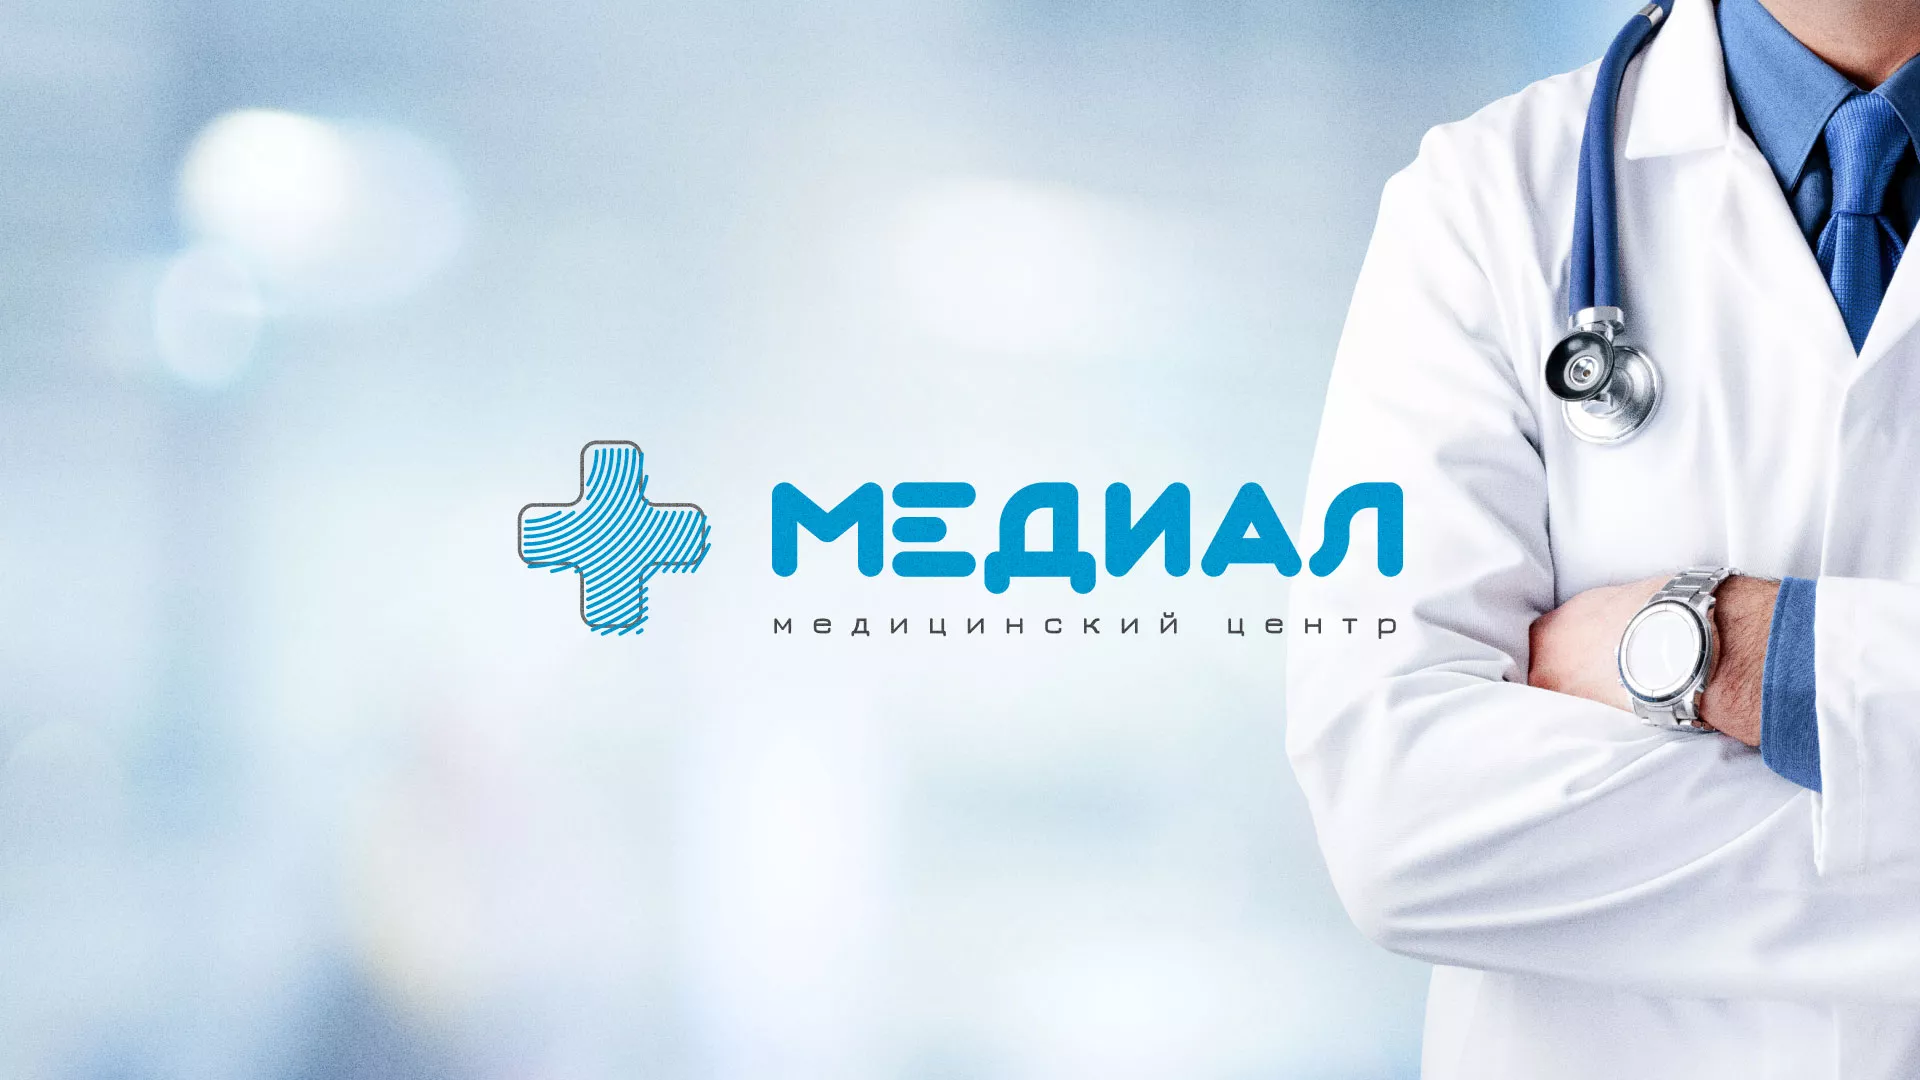 Создание сайта для медицинского центра «Медиал» в Мариинском Посаде